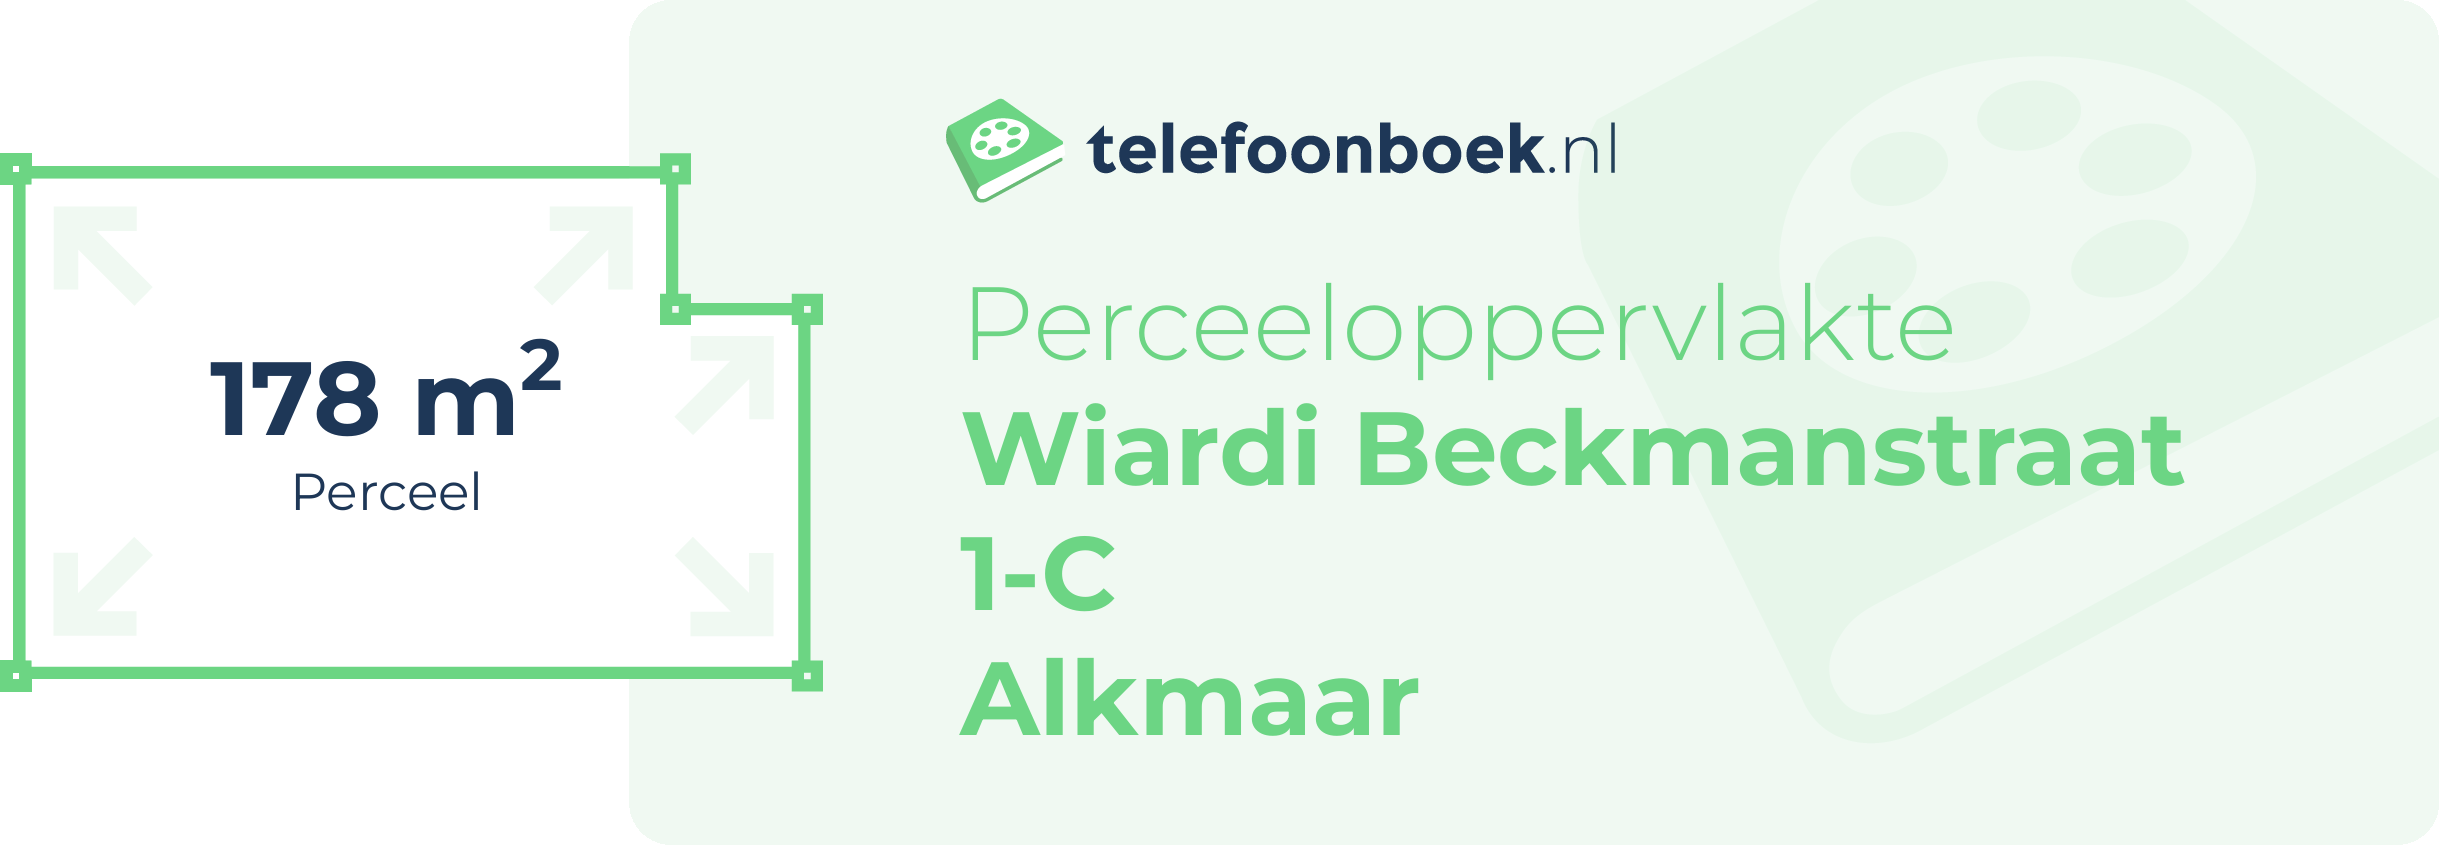 Perceeloppervlakte Wiardi Beckmanstraat 1-C Alkmaar